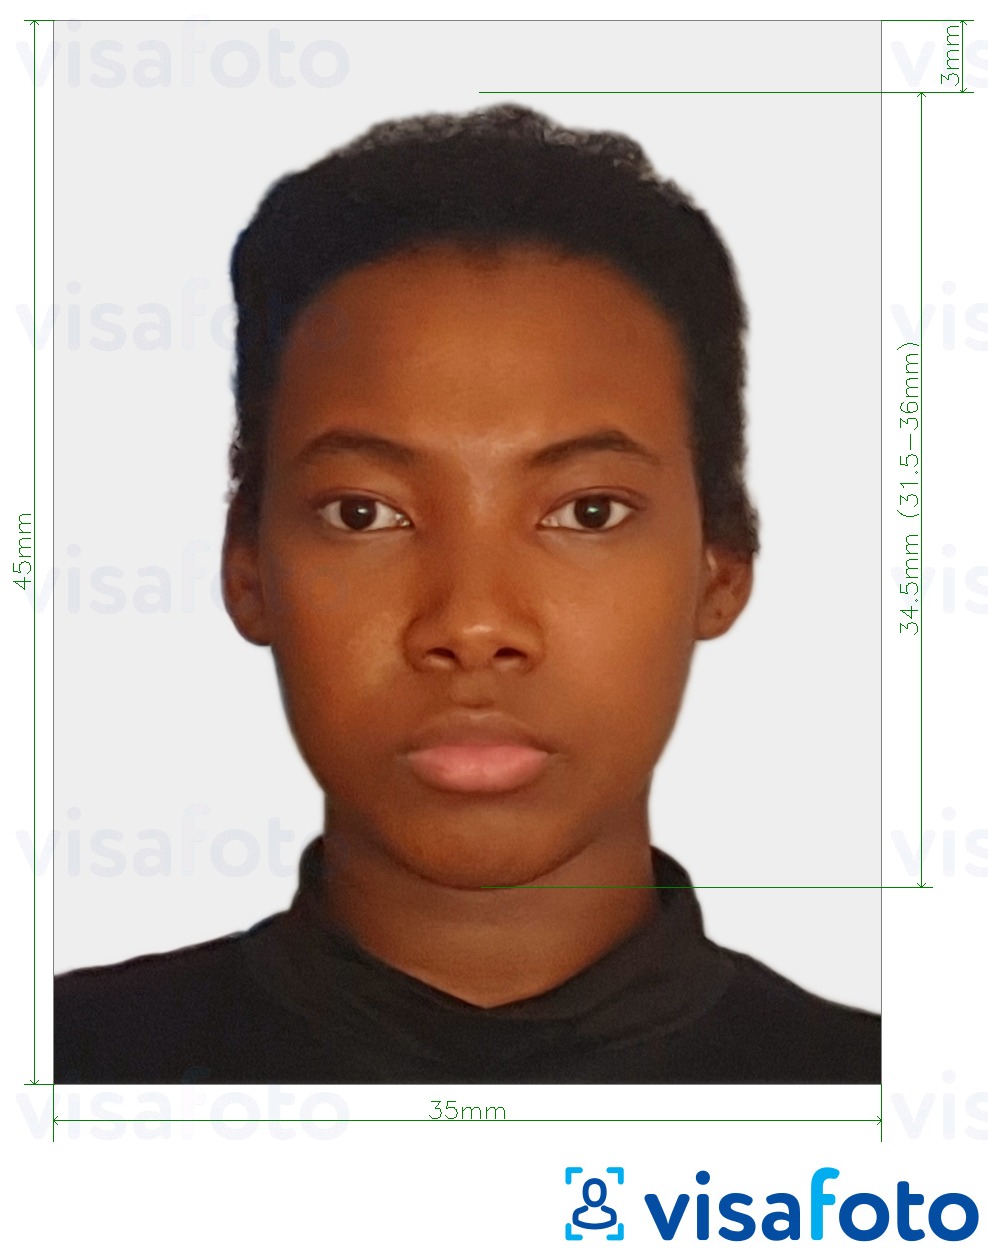 نمونه ی یک عکس برای پاسپورت کنگو (برازاویل) 35x45 میلی متر (3.5x4.5 سانتی متر) با مشخصات دقیق